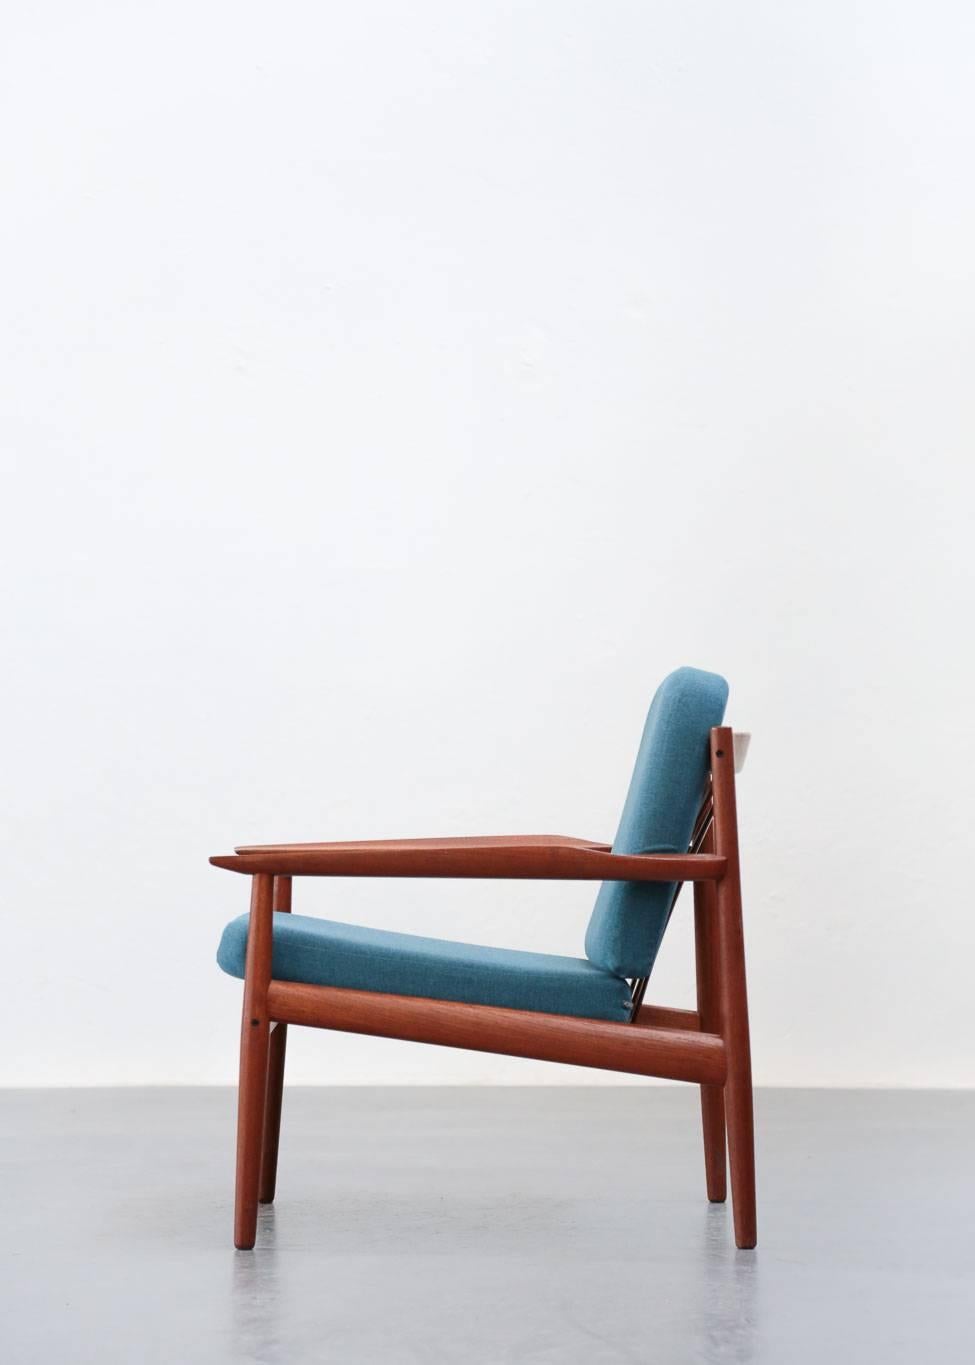 Scandinavian Modern Rare Easy Chairs by Arne Vodder 1960s Teak Danish